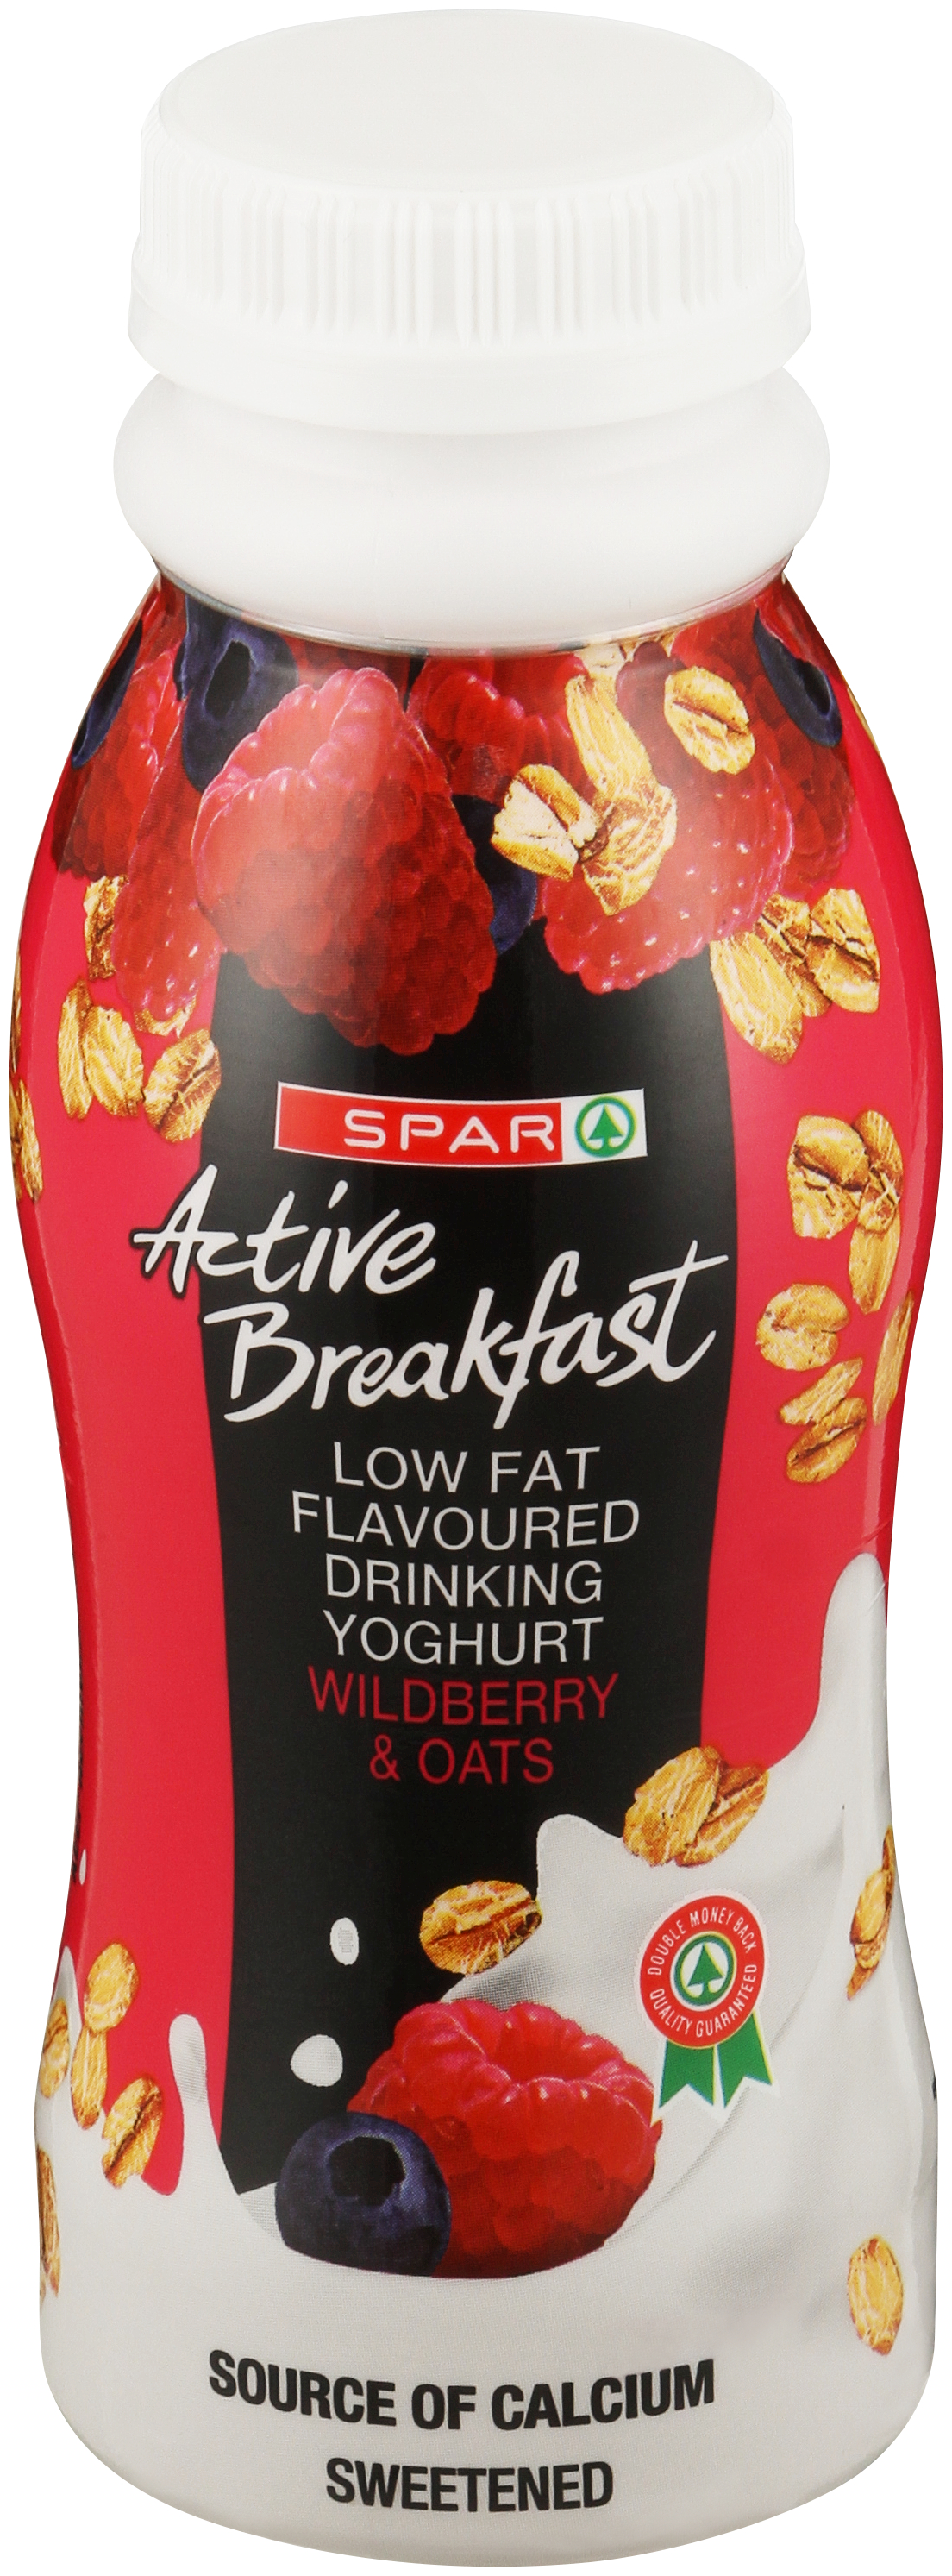 active breakfast wild berry & oats